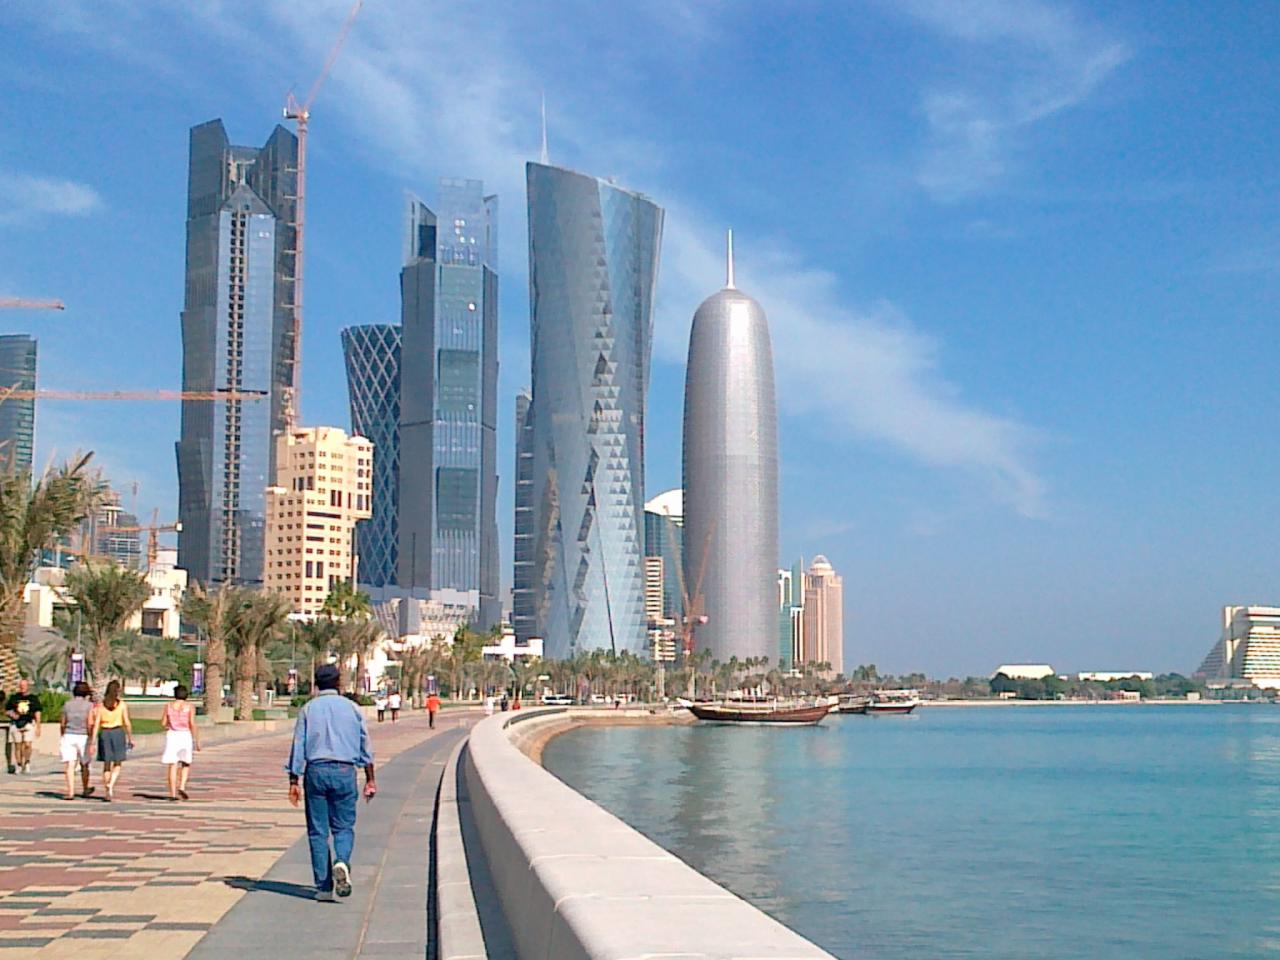 
Катар планирует создать финансовый район по образцу Уолл-Стрит